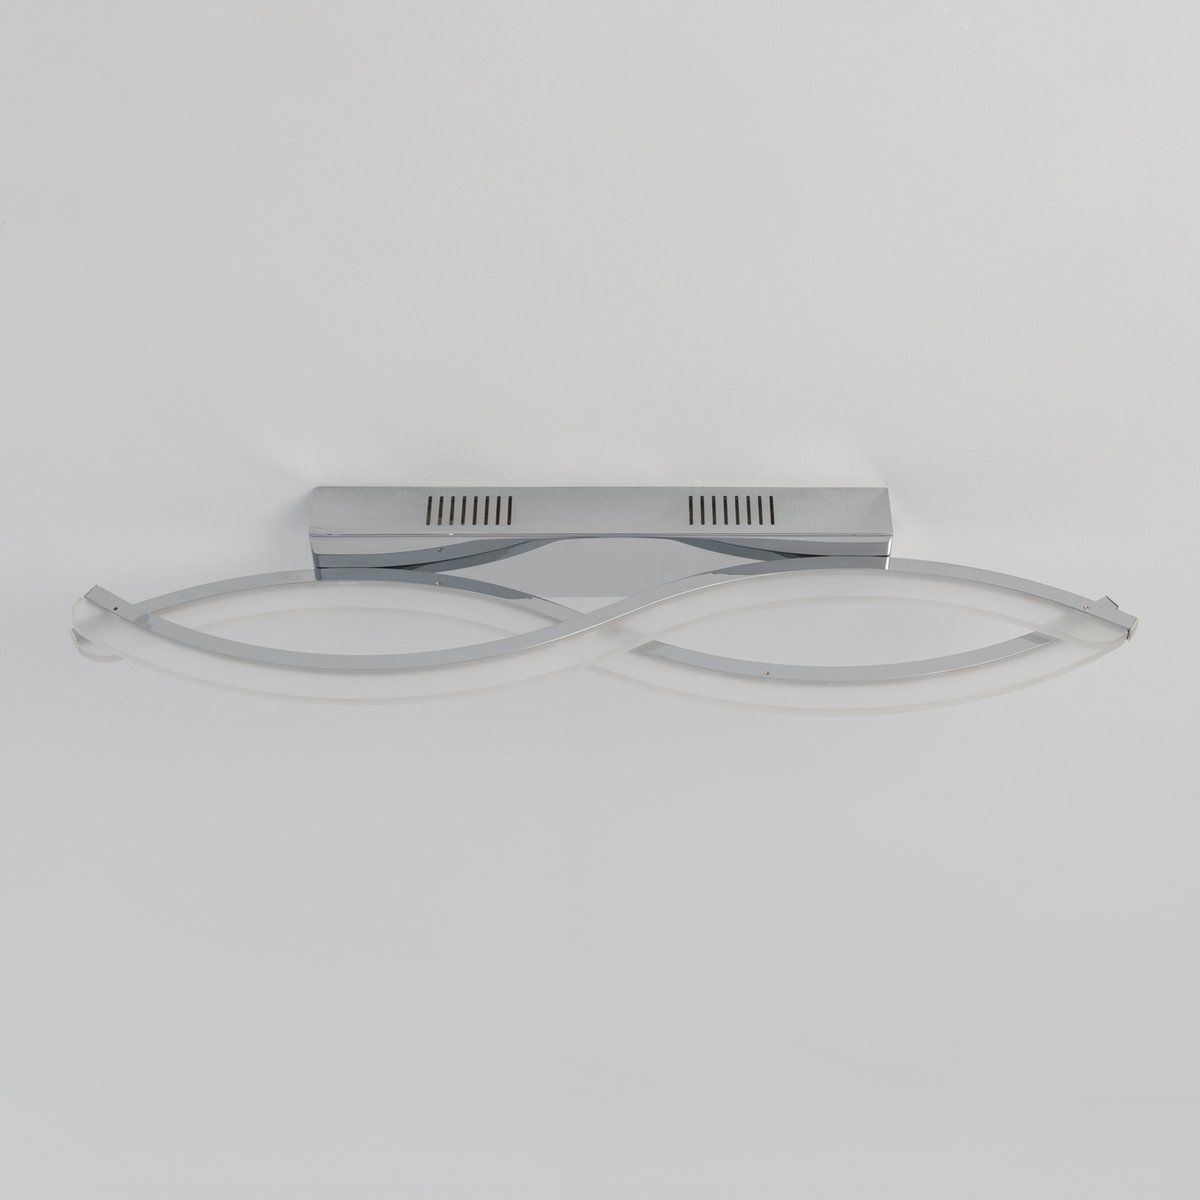 Plafonnier design Led ROMA argenté en métal/alu/acrylique